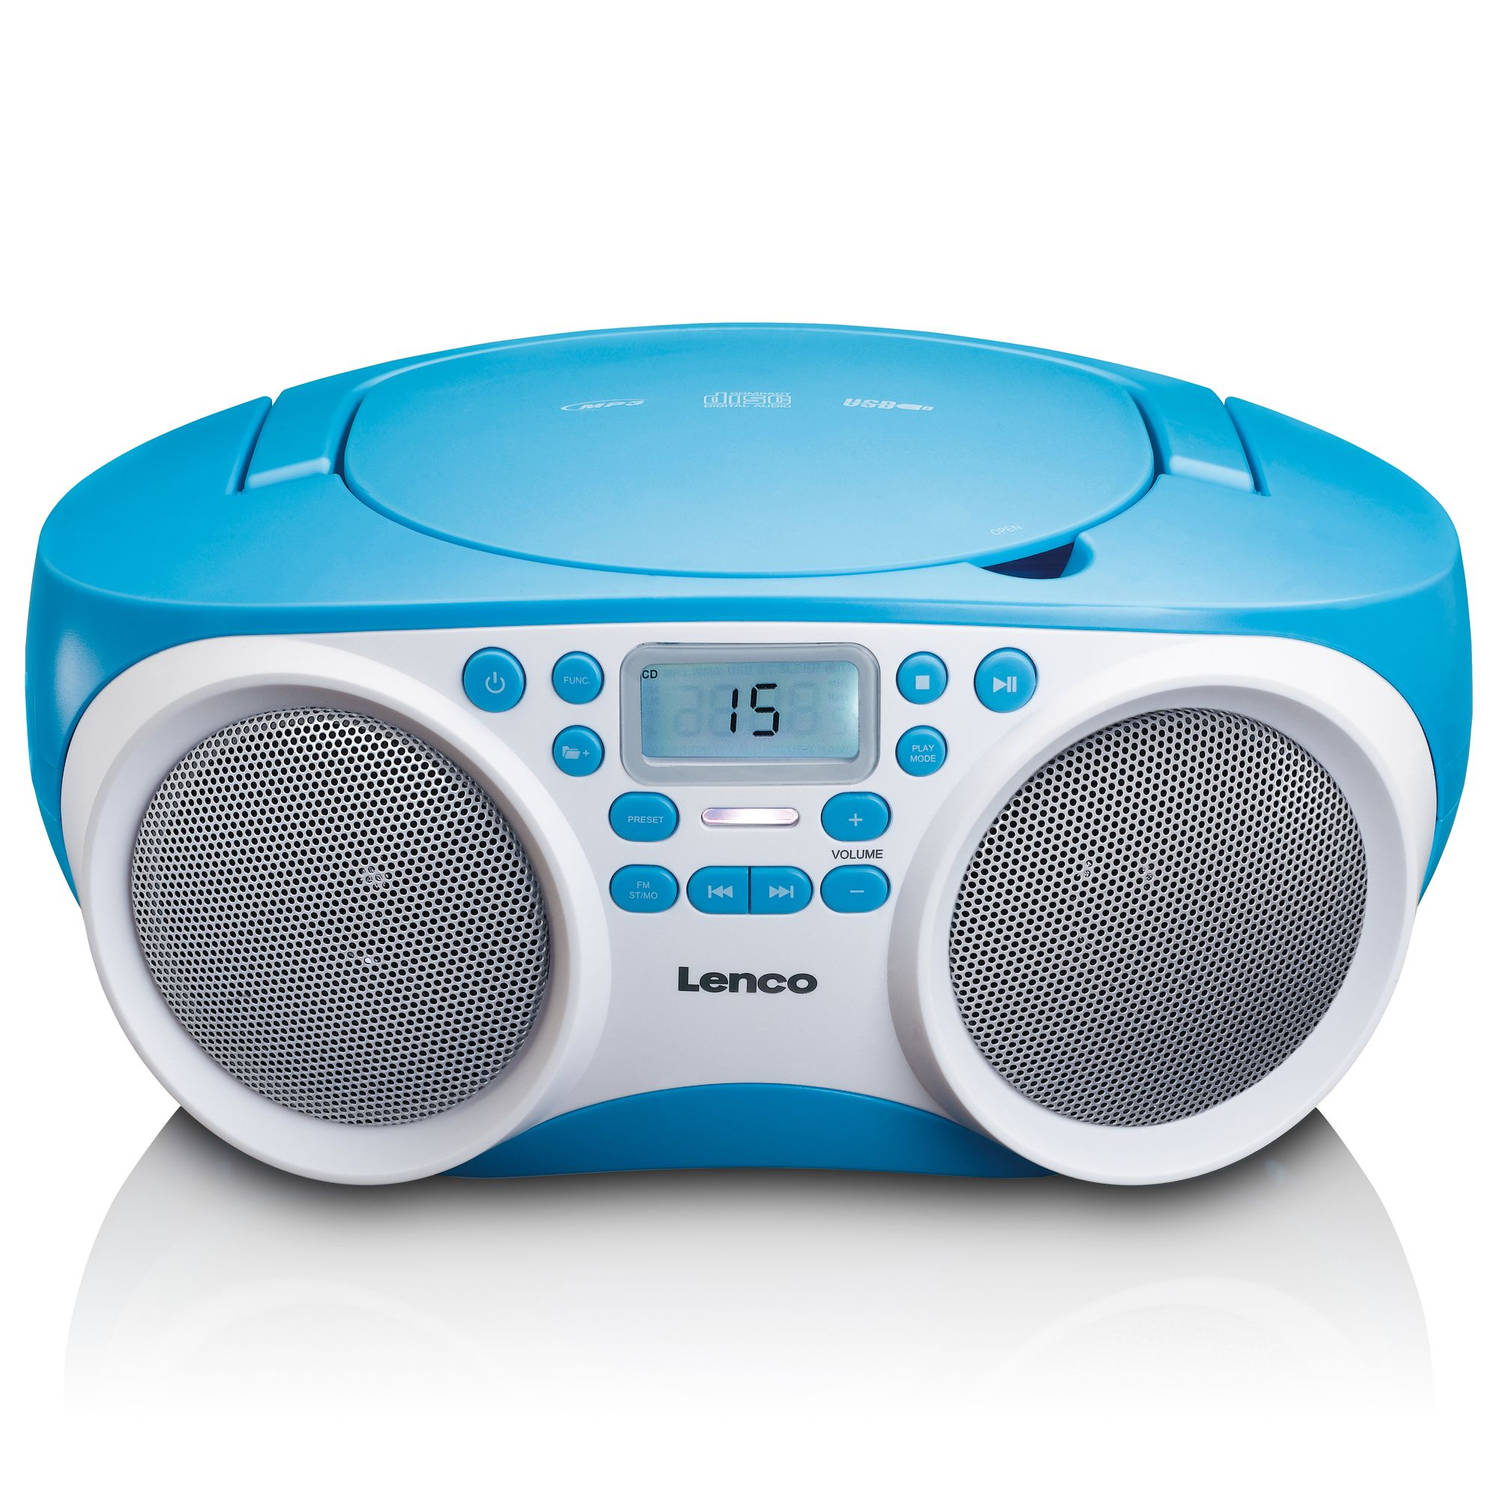 planter Aanvankelijk voor mij Radio CD Speler met MP3 en USB functie Lenco SCD-200BU Blauw-Wit | Blokker